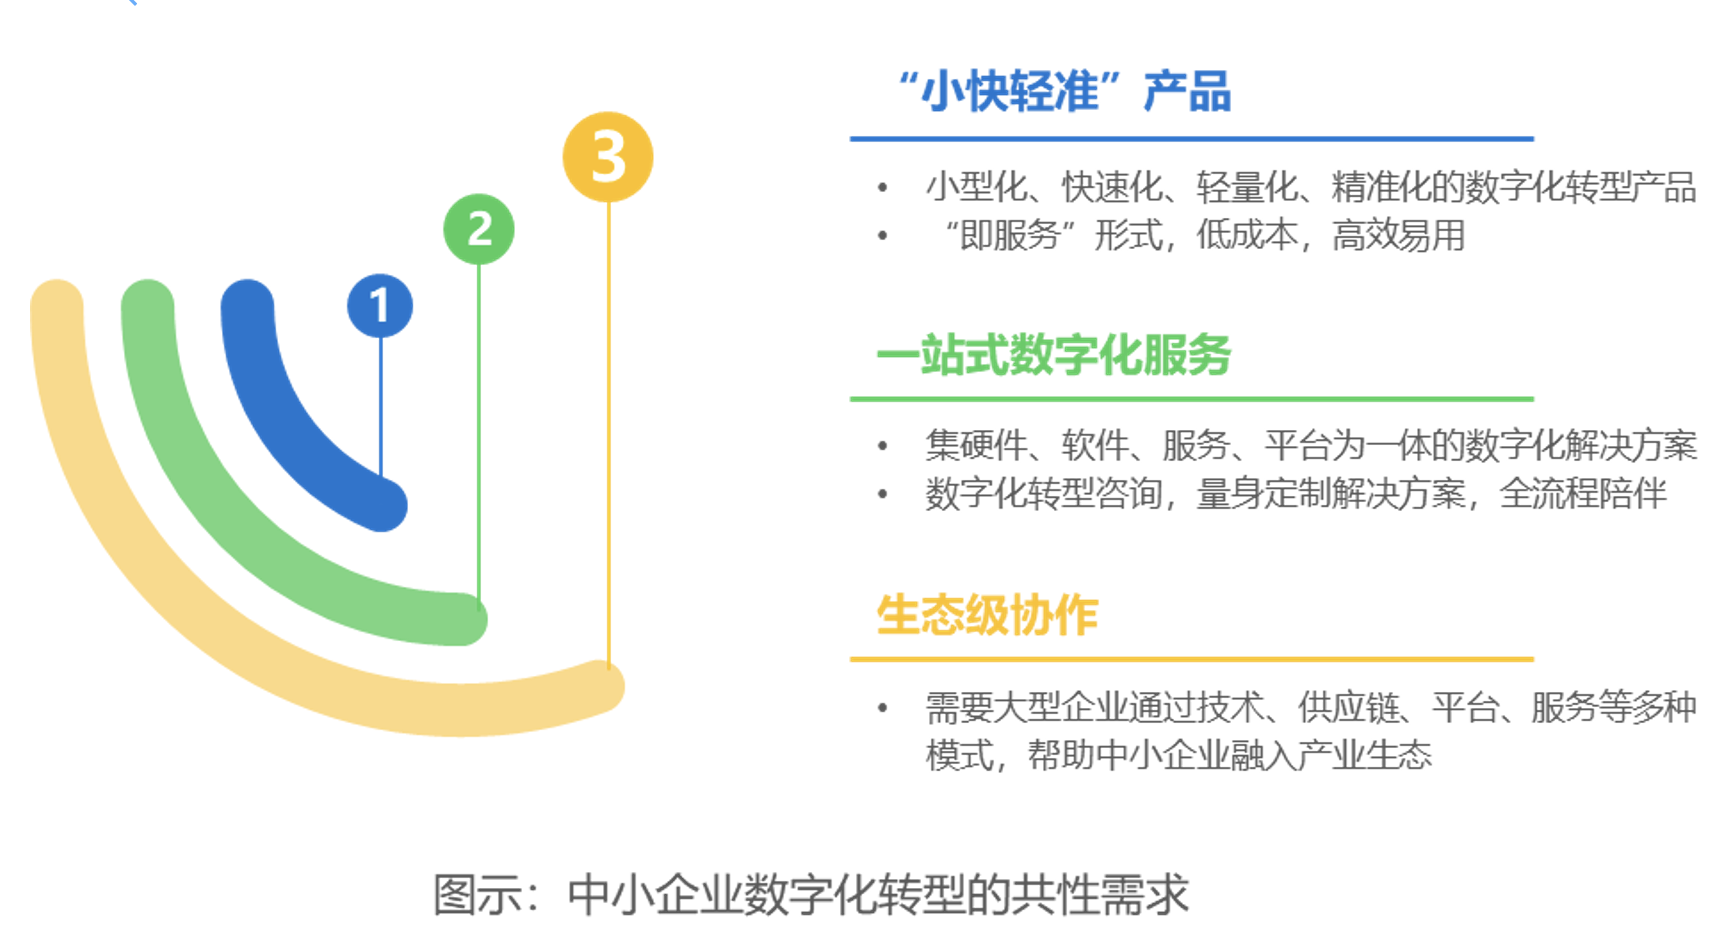 中国中小企业数字化转型研究报告发布  一站式数字化服务成“刚需”